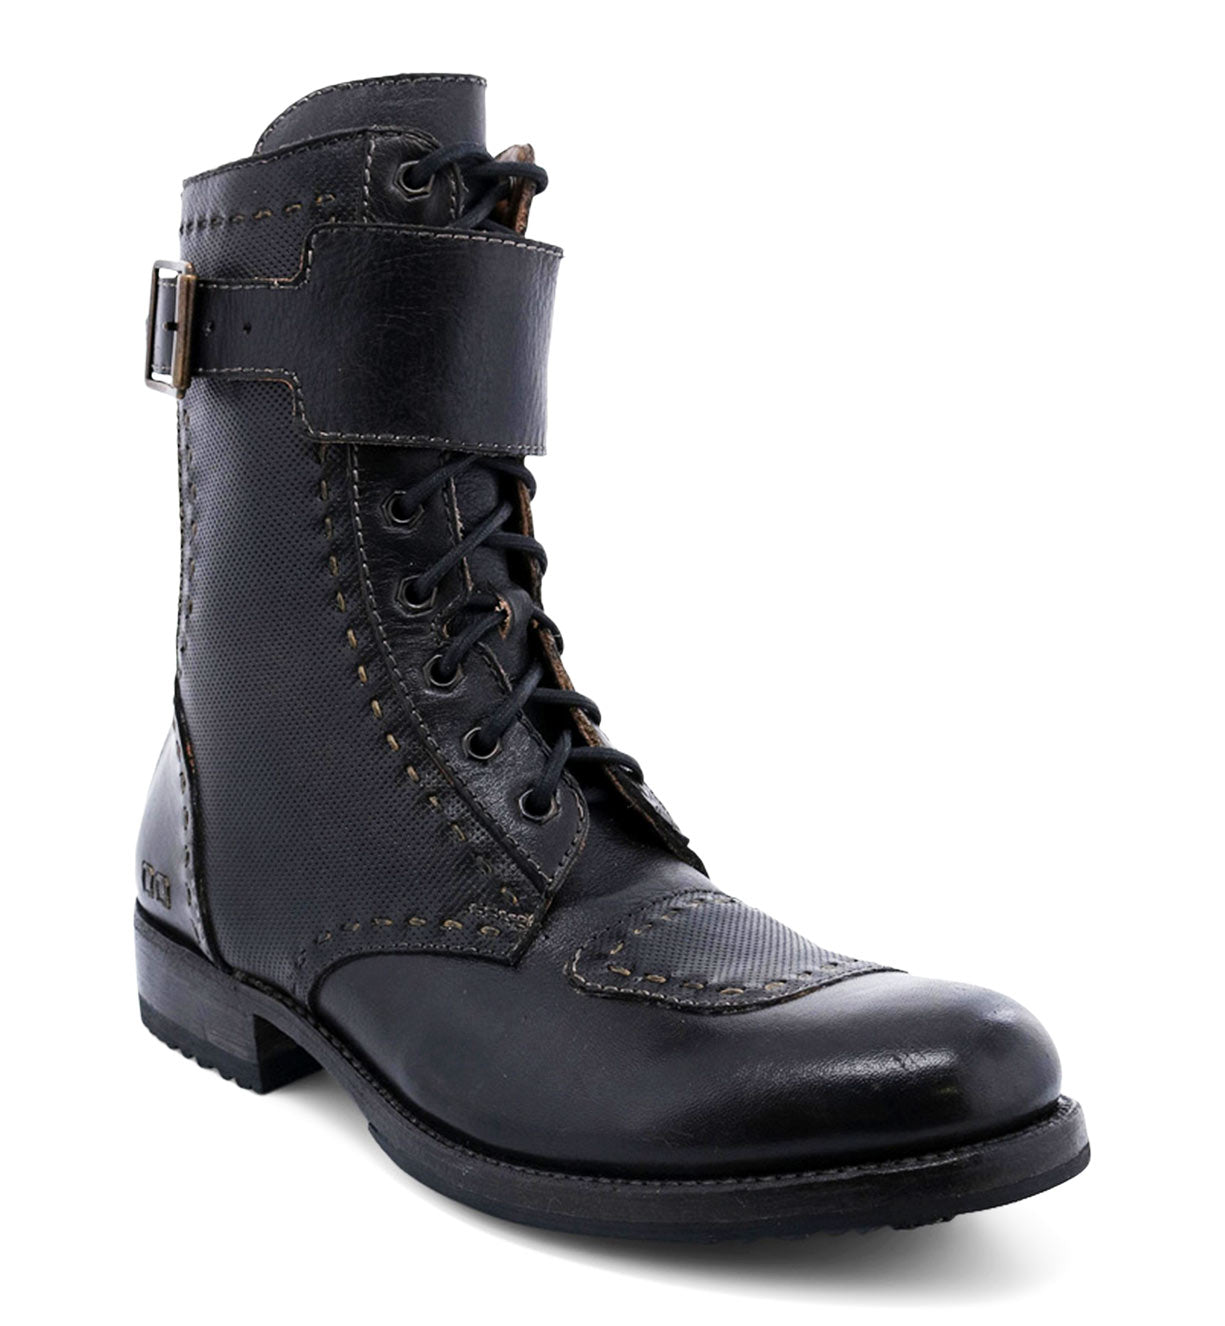 Men's black Bed Stu combat boots with buckles.